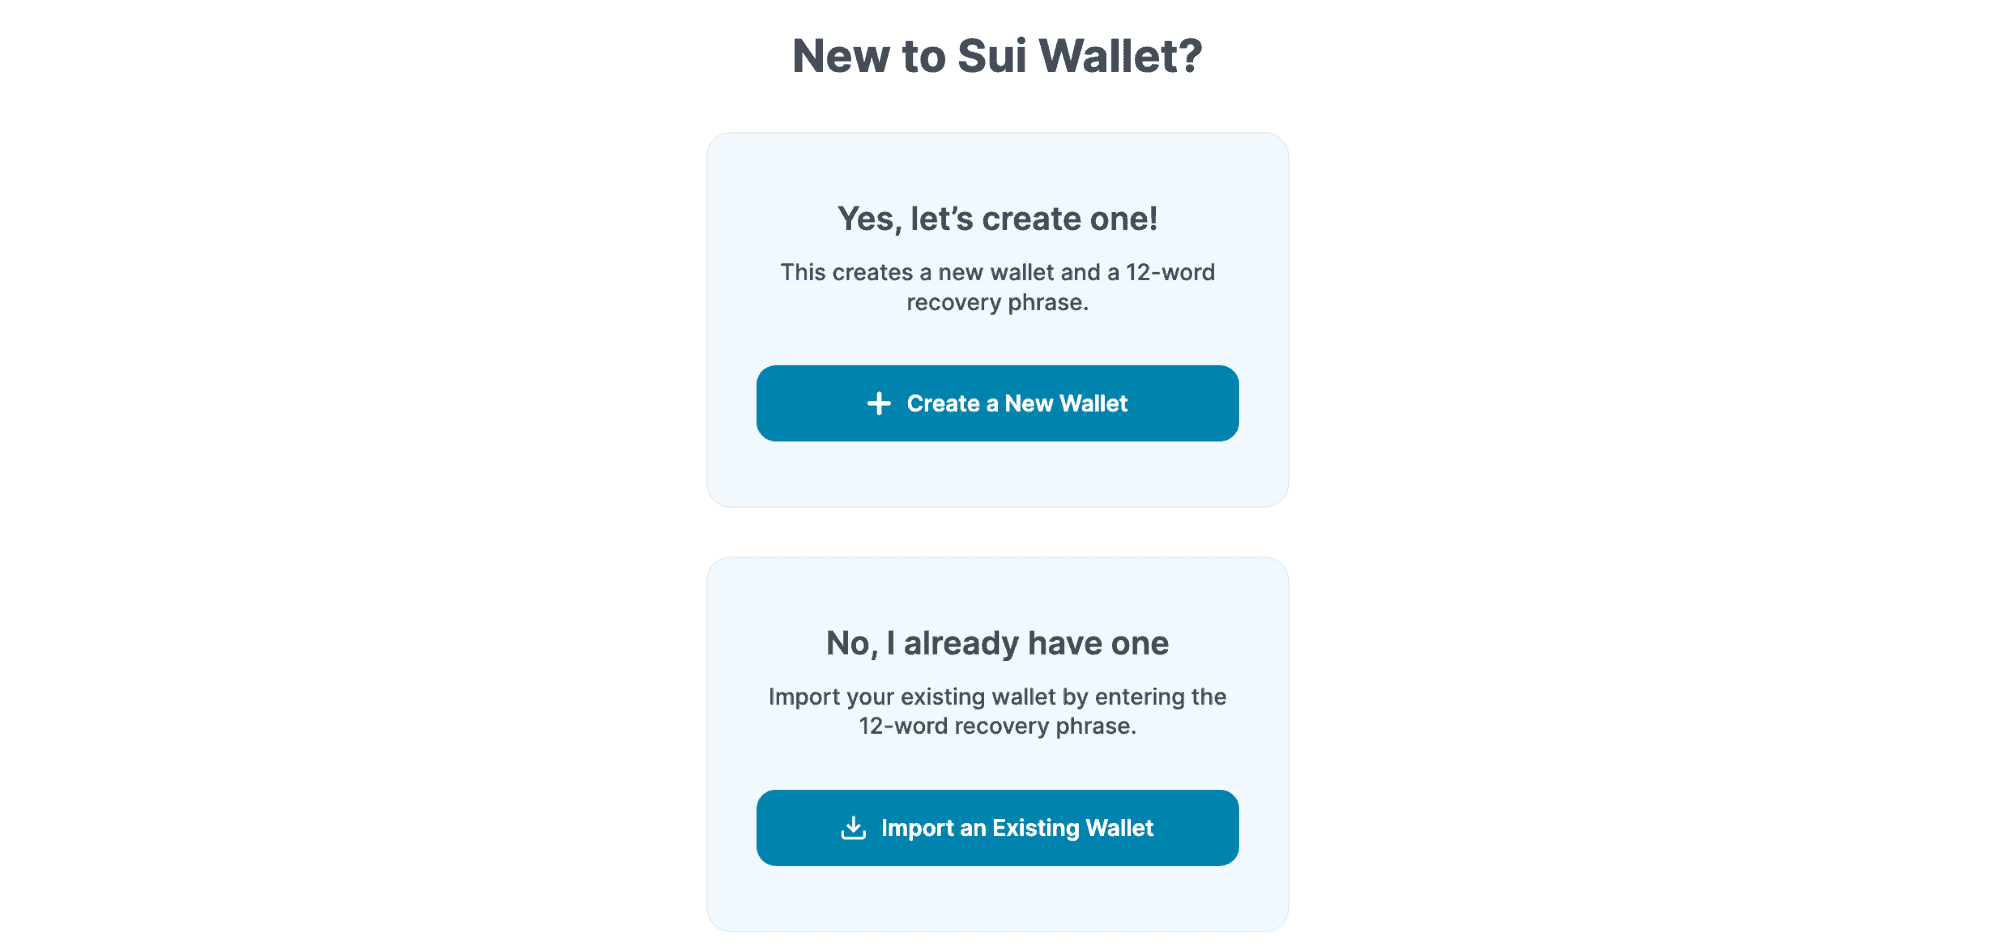 Sui wallet creation